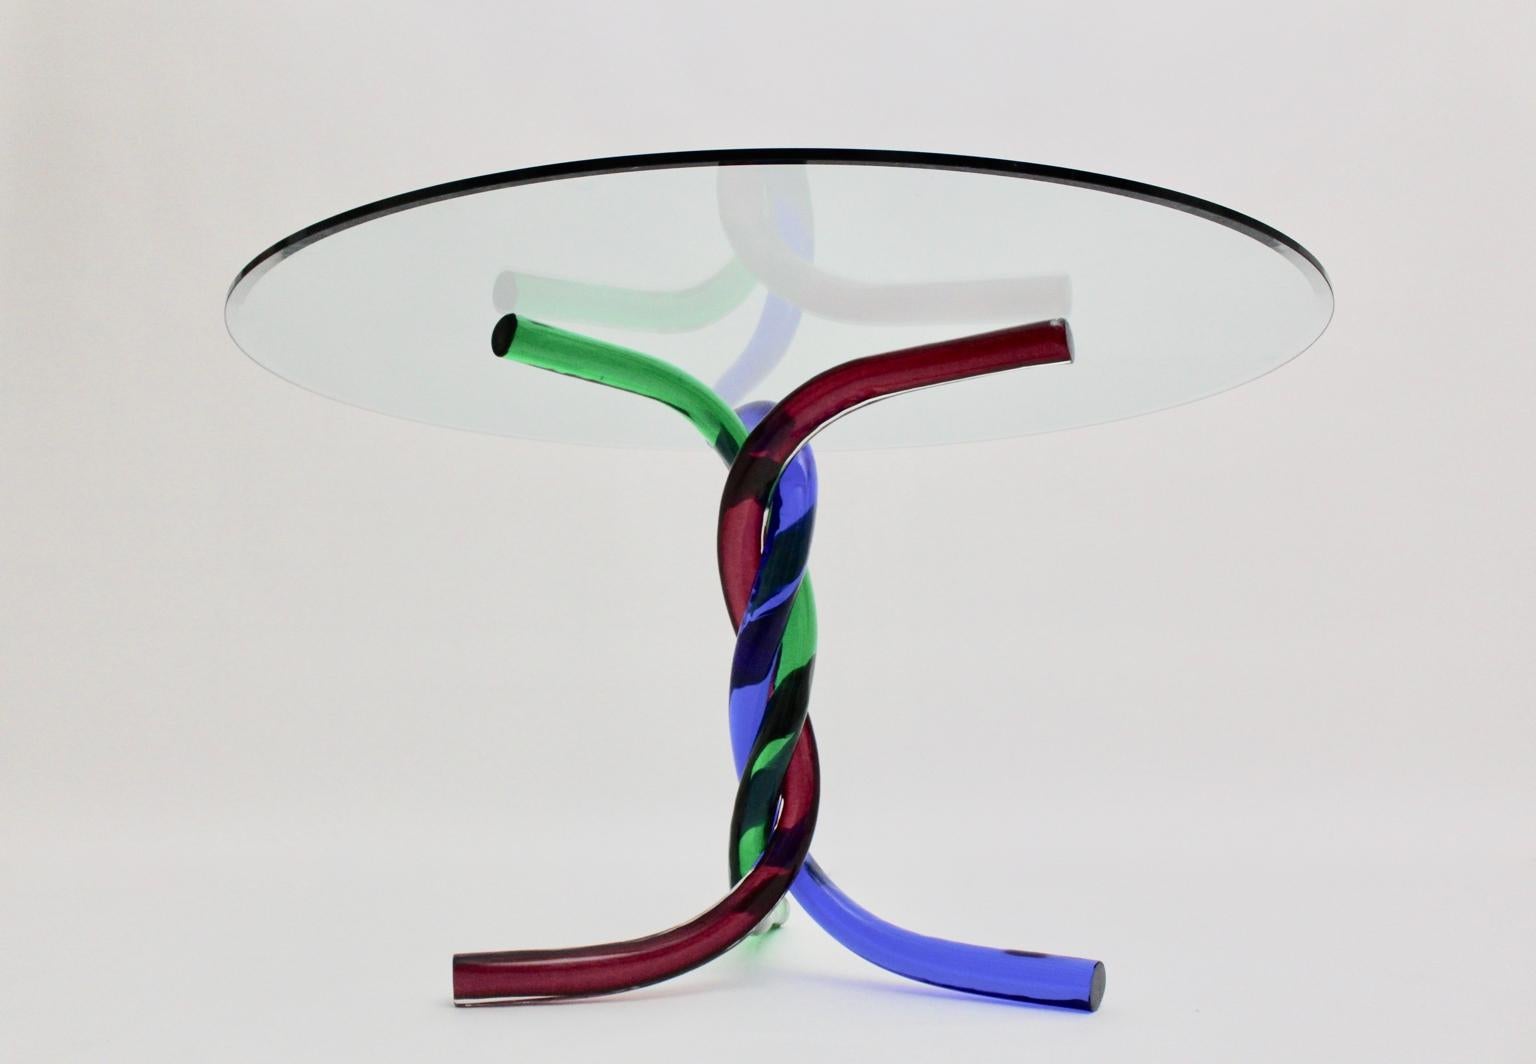 Mid-Century Modern Vintage Glas Esstisch oder Mitteltisch, der in Murano, Italien 1970 entworfen und hergestellt wurde. Der seltene Esstisch hat einen bunten Sockel aus drei geschwungenen Glaselementen in den Farben Rot, Blau und Grün mit einer